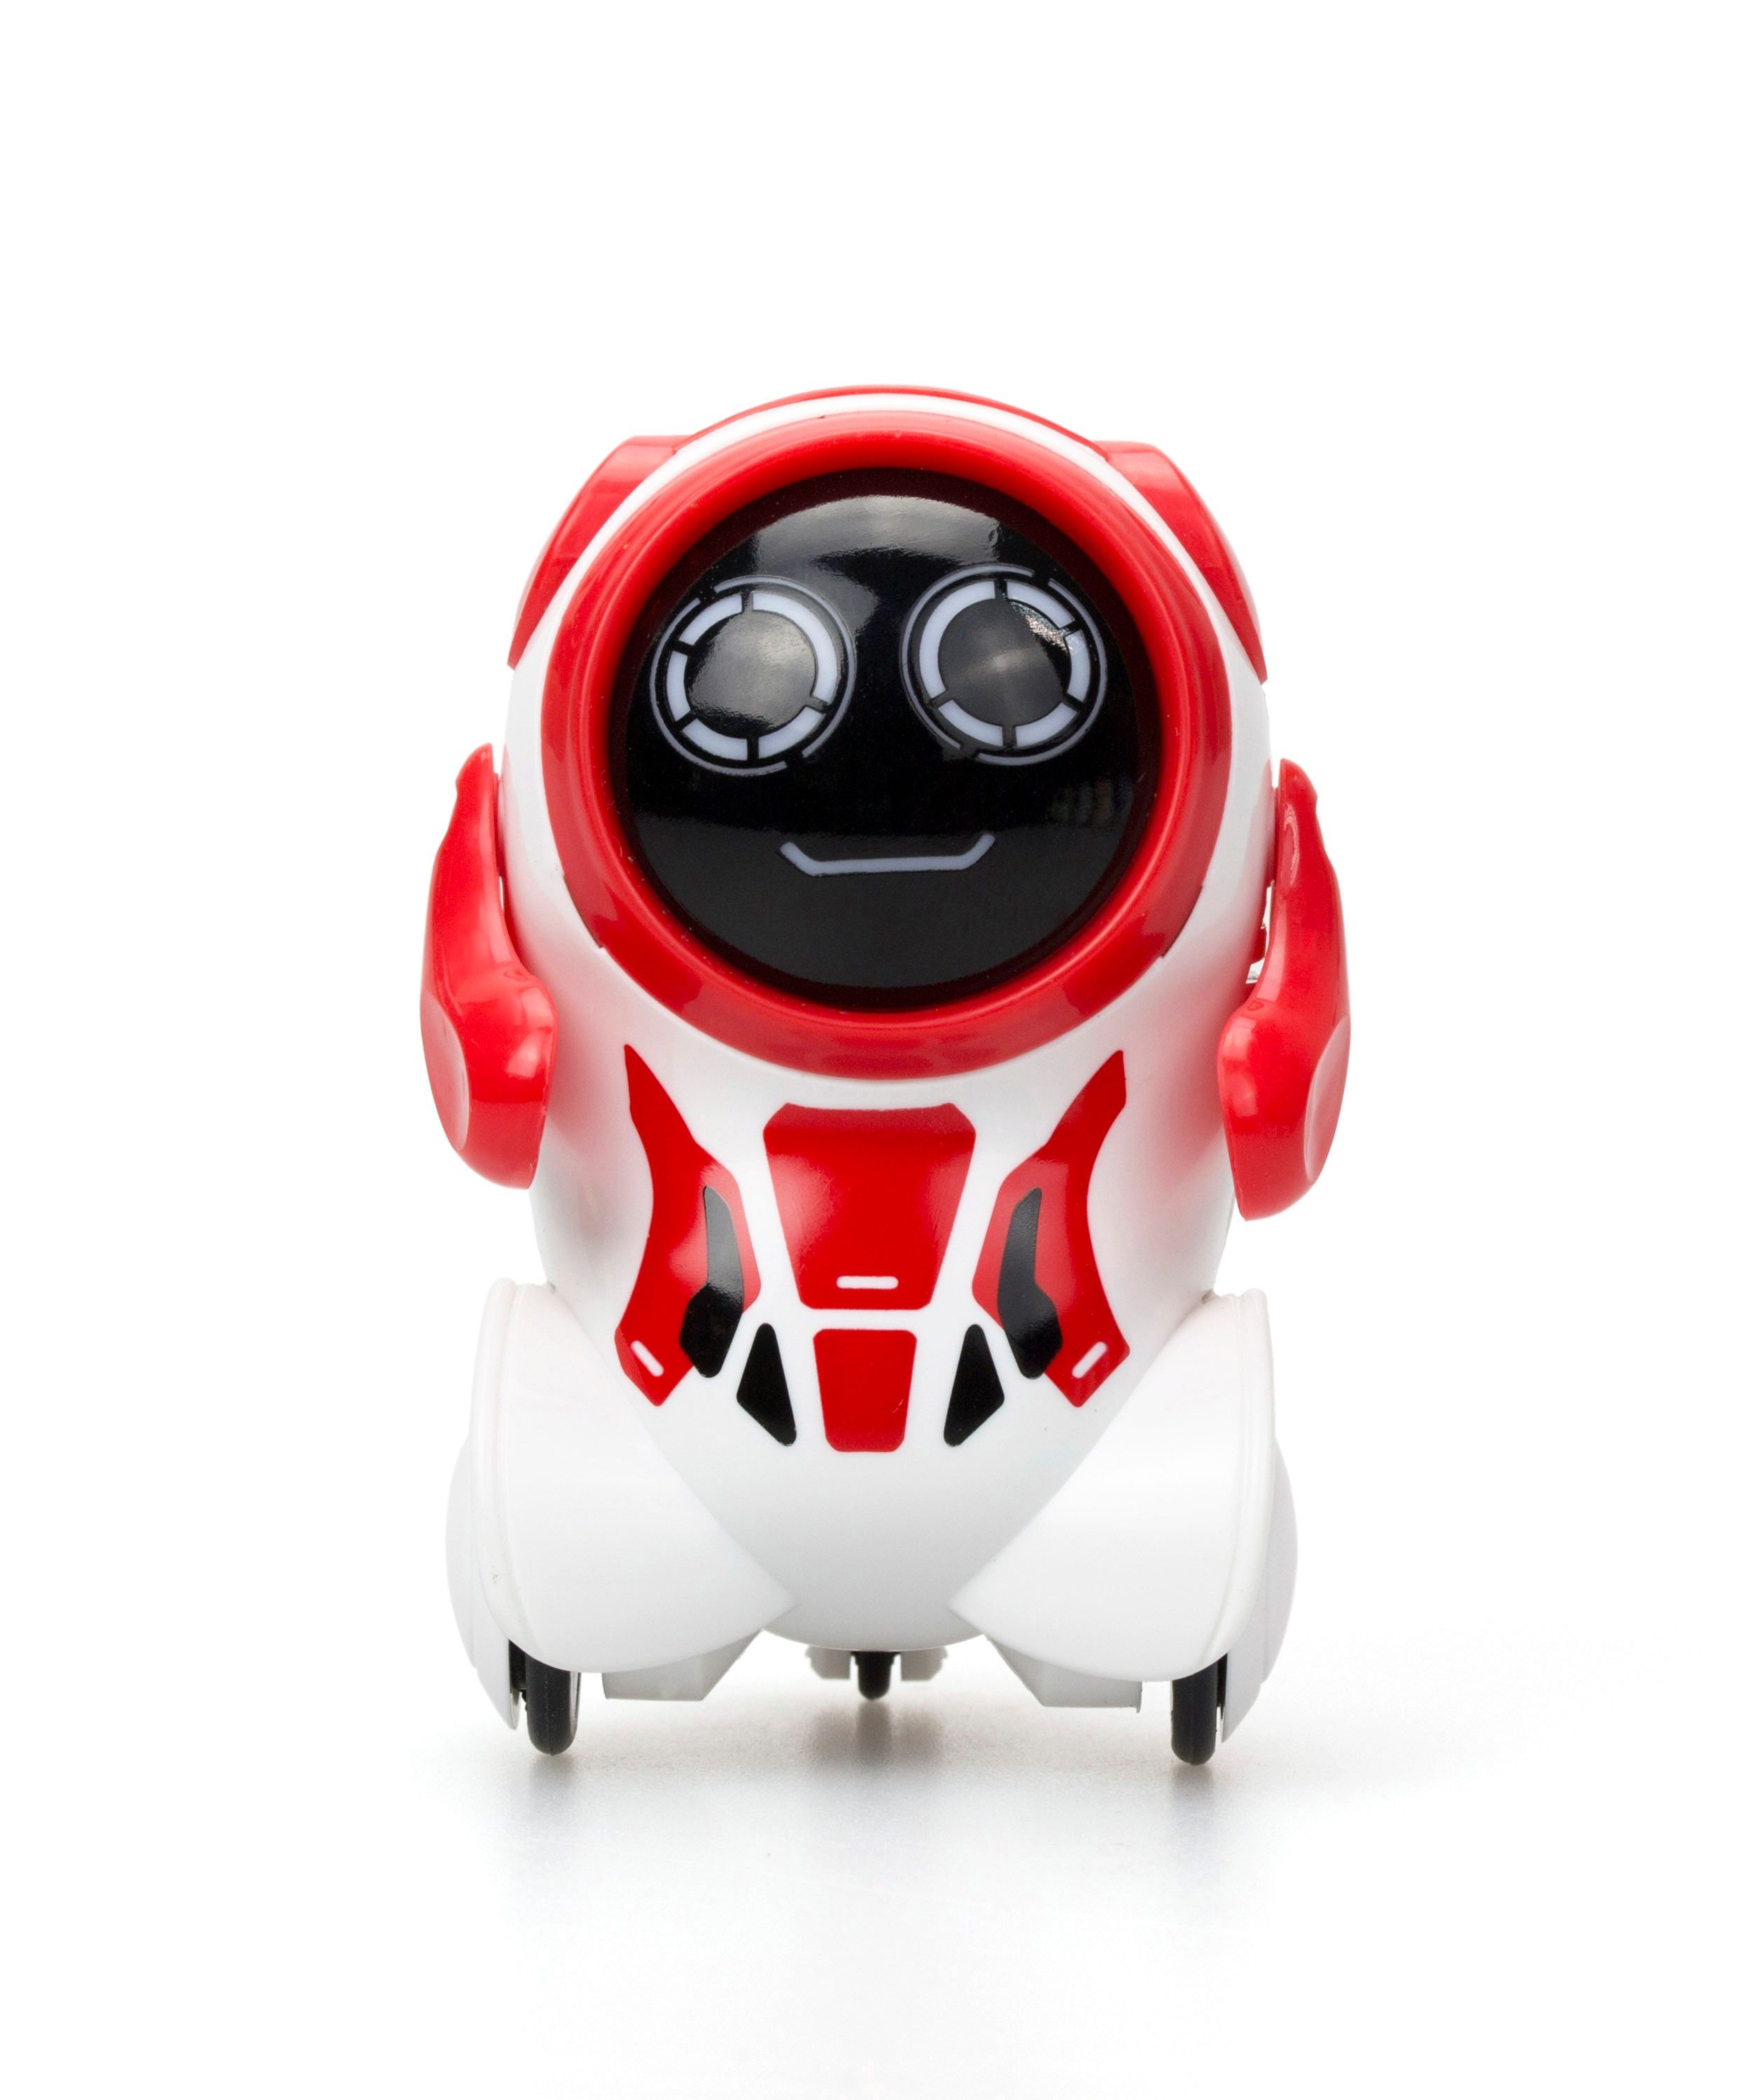 Pokibot Rund Robot - Rød